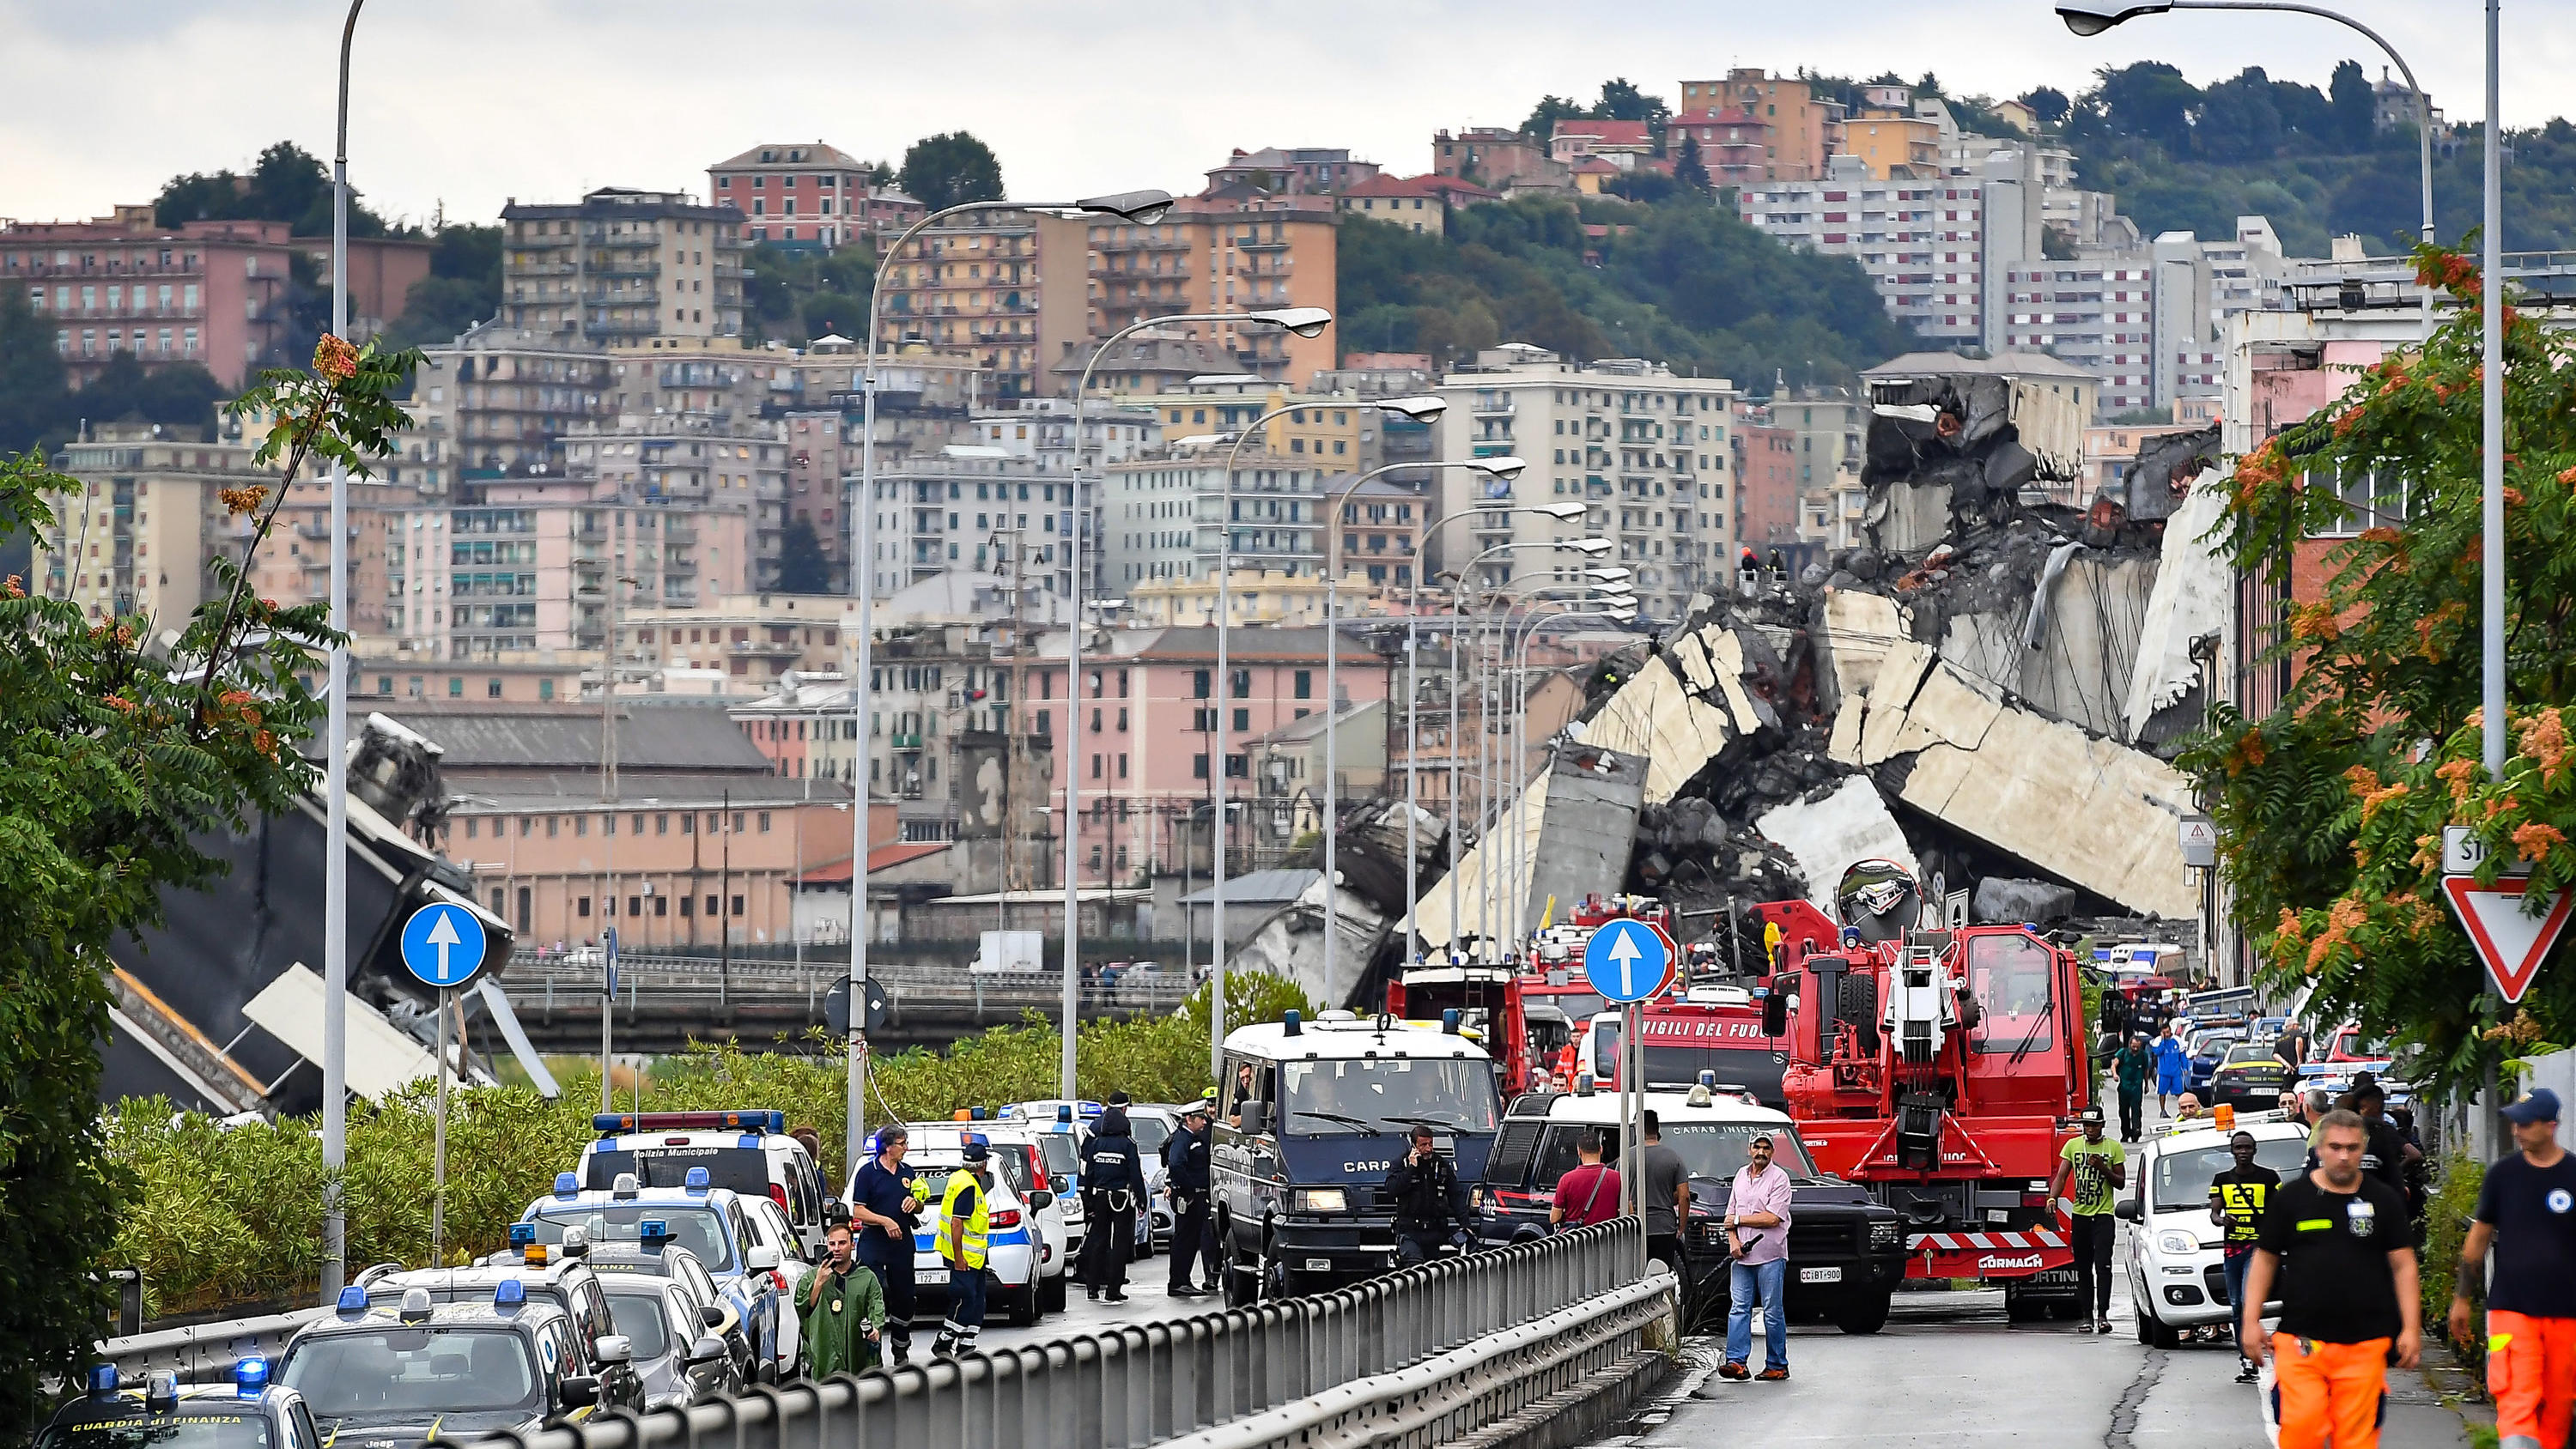 14.08.2018, Italien, Genua: Feuerwehrwagen und Polizeiautos sind vor der teilweise eingestürzten Autobahnbrücke Ponte Morandi zu sehen. Beim Einsturz der Brücke sind mindestens elf Menschen ums Leben gekommen. Das berichtete die Nachrichtenagentur An